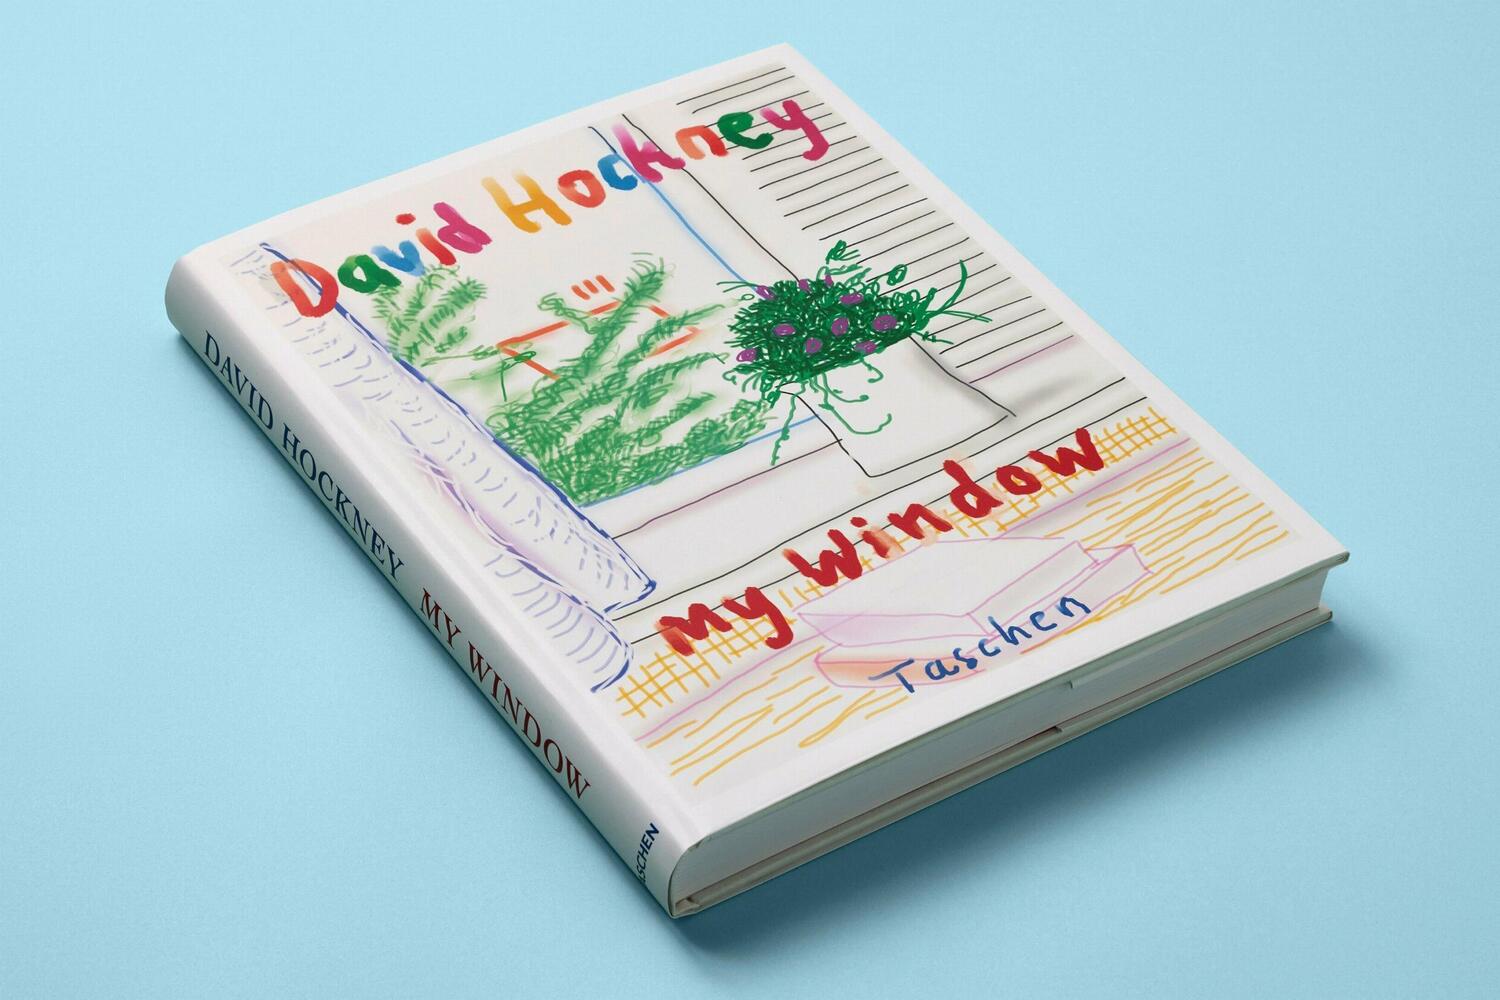 Bild: 9783836593922 | David Hockney. My Window | Buch | GER, Hardcover | 248 S. | Englisch